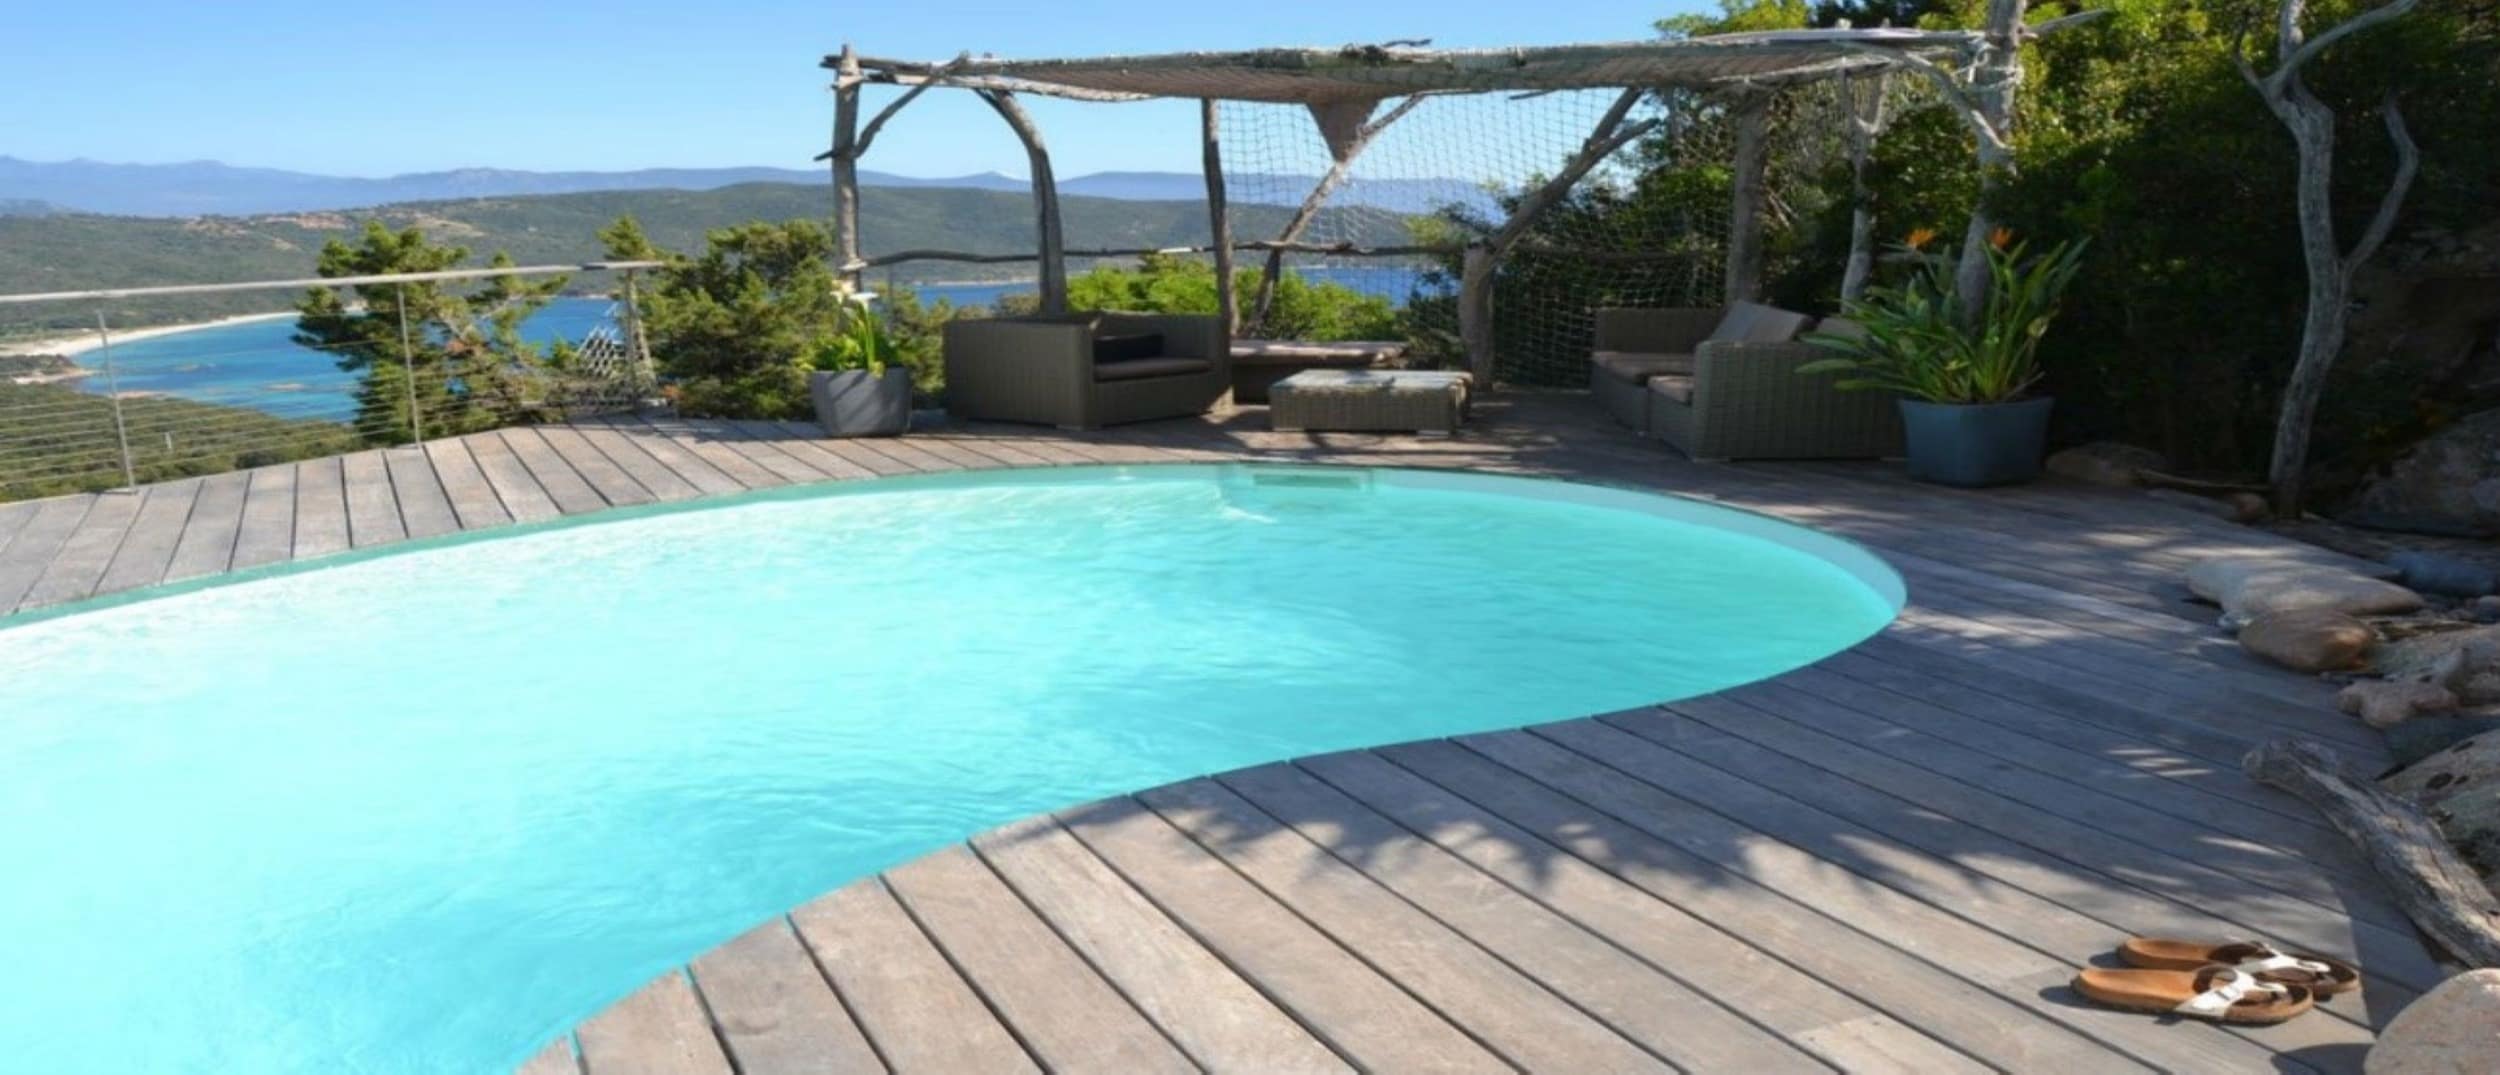 Tu casa rural ideal con piscina climatizada para tus próximas vacaciones